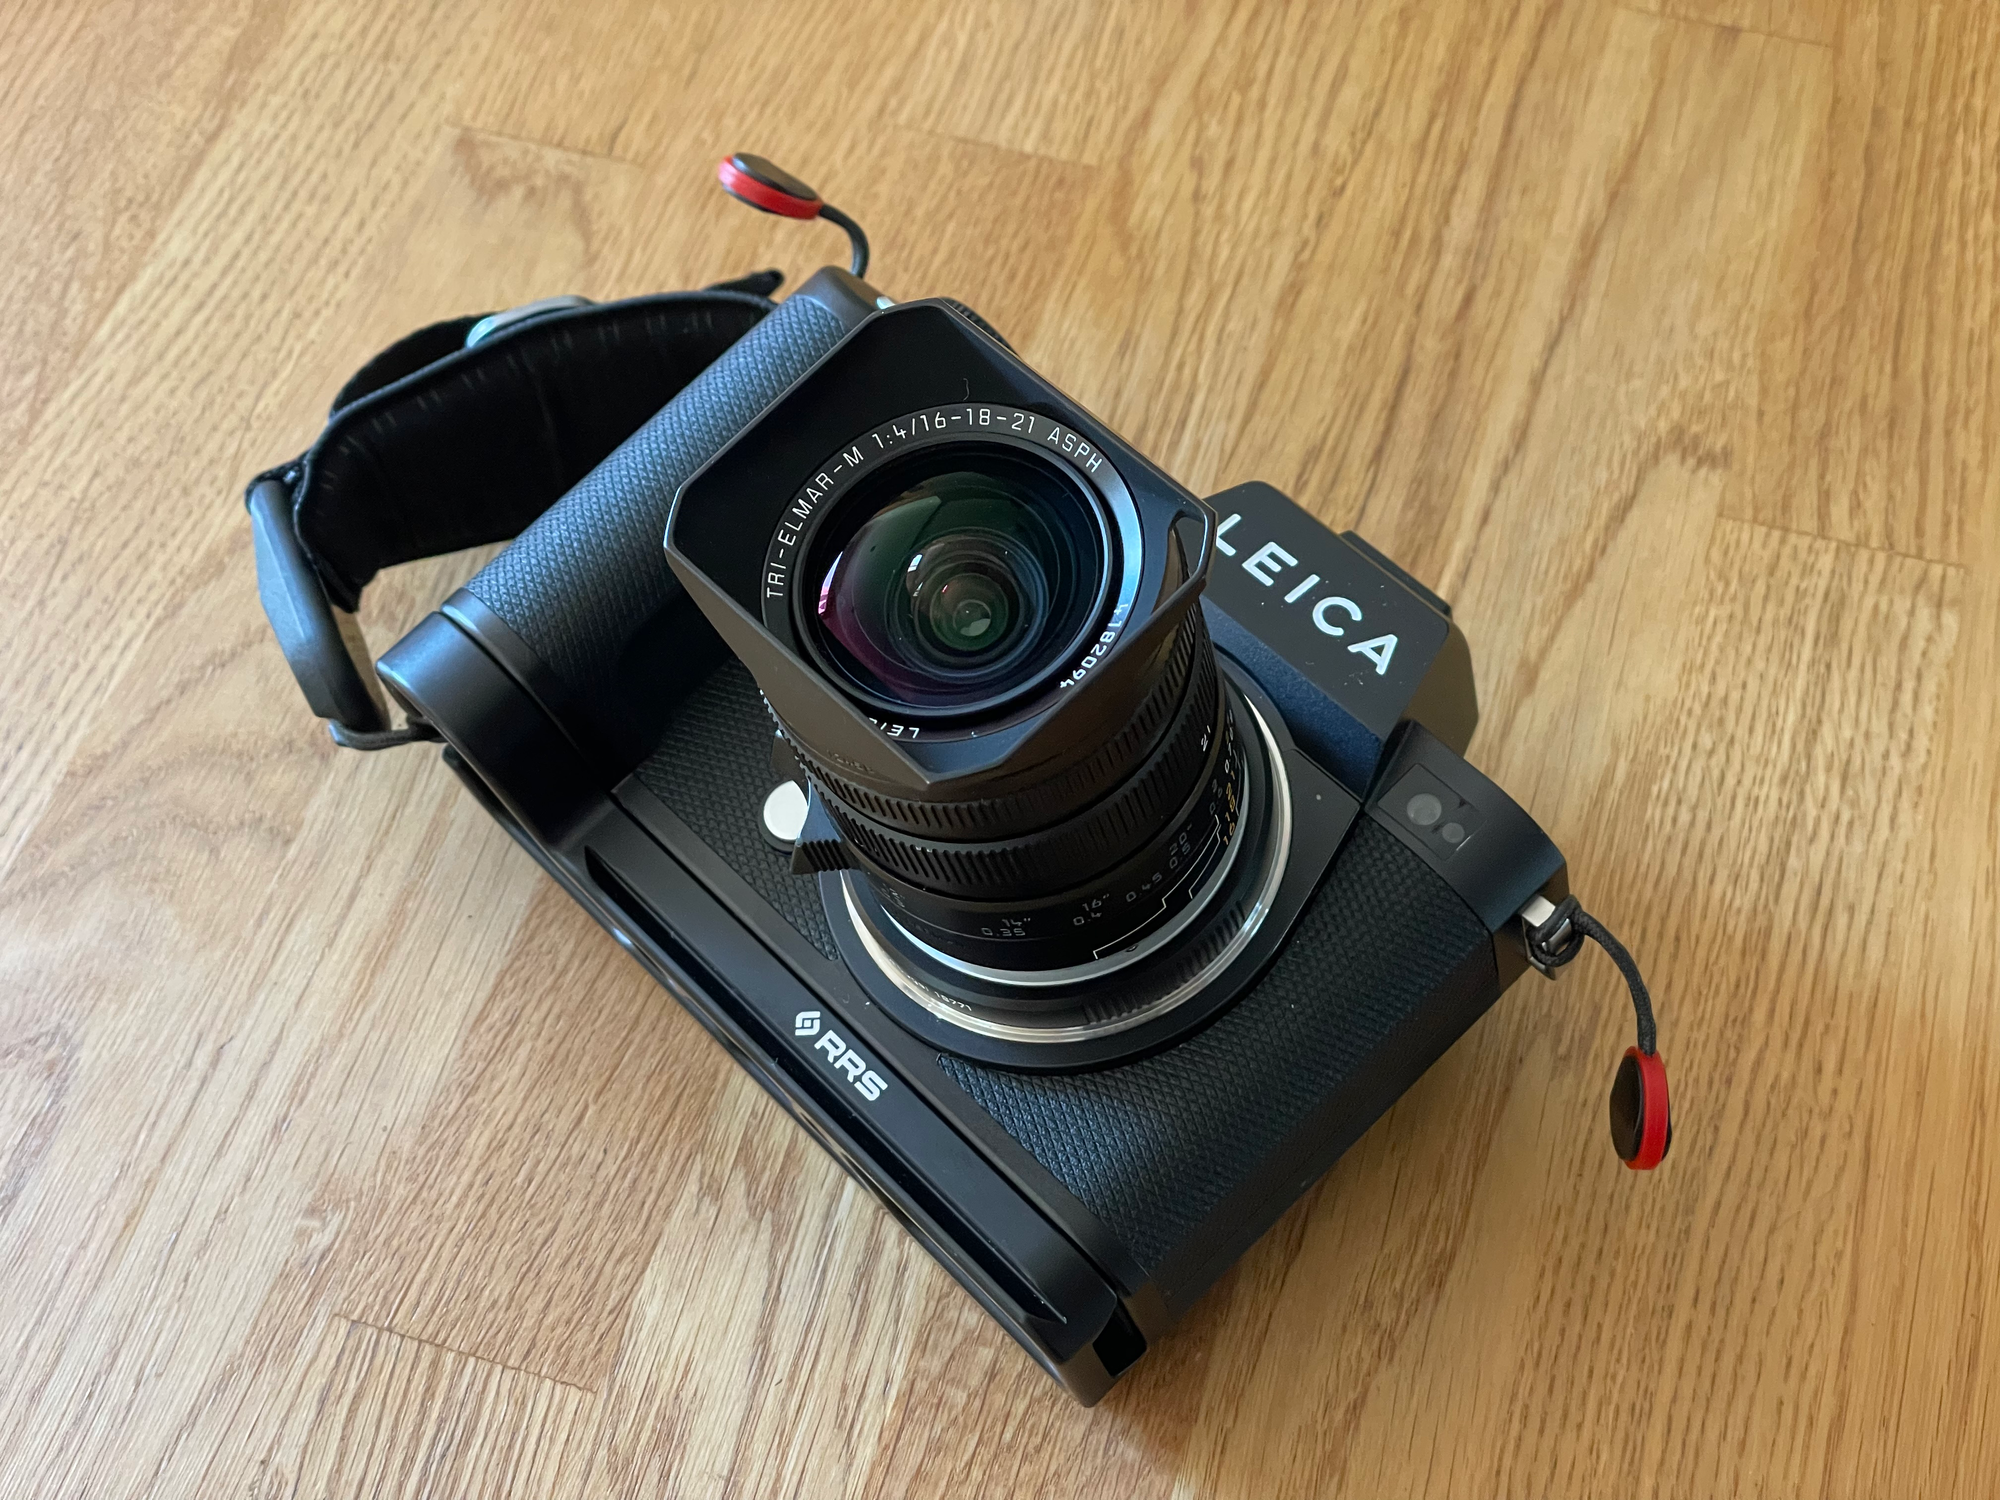 Leica SL2 + Tri-Elmar-M 16-18-21 f/4 ASPH